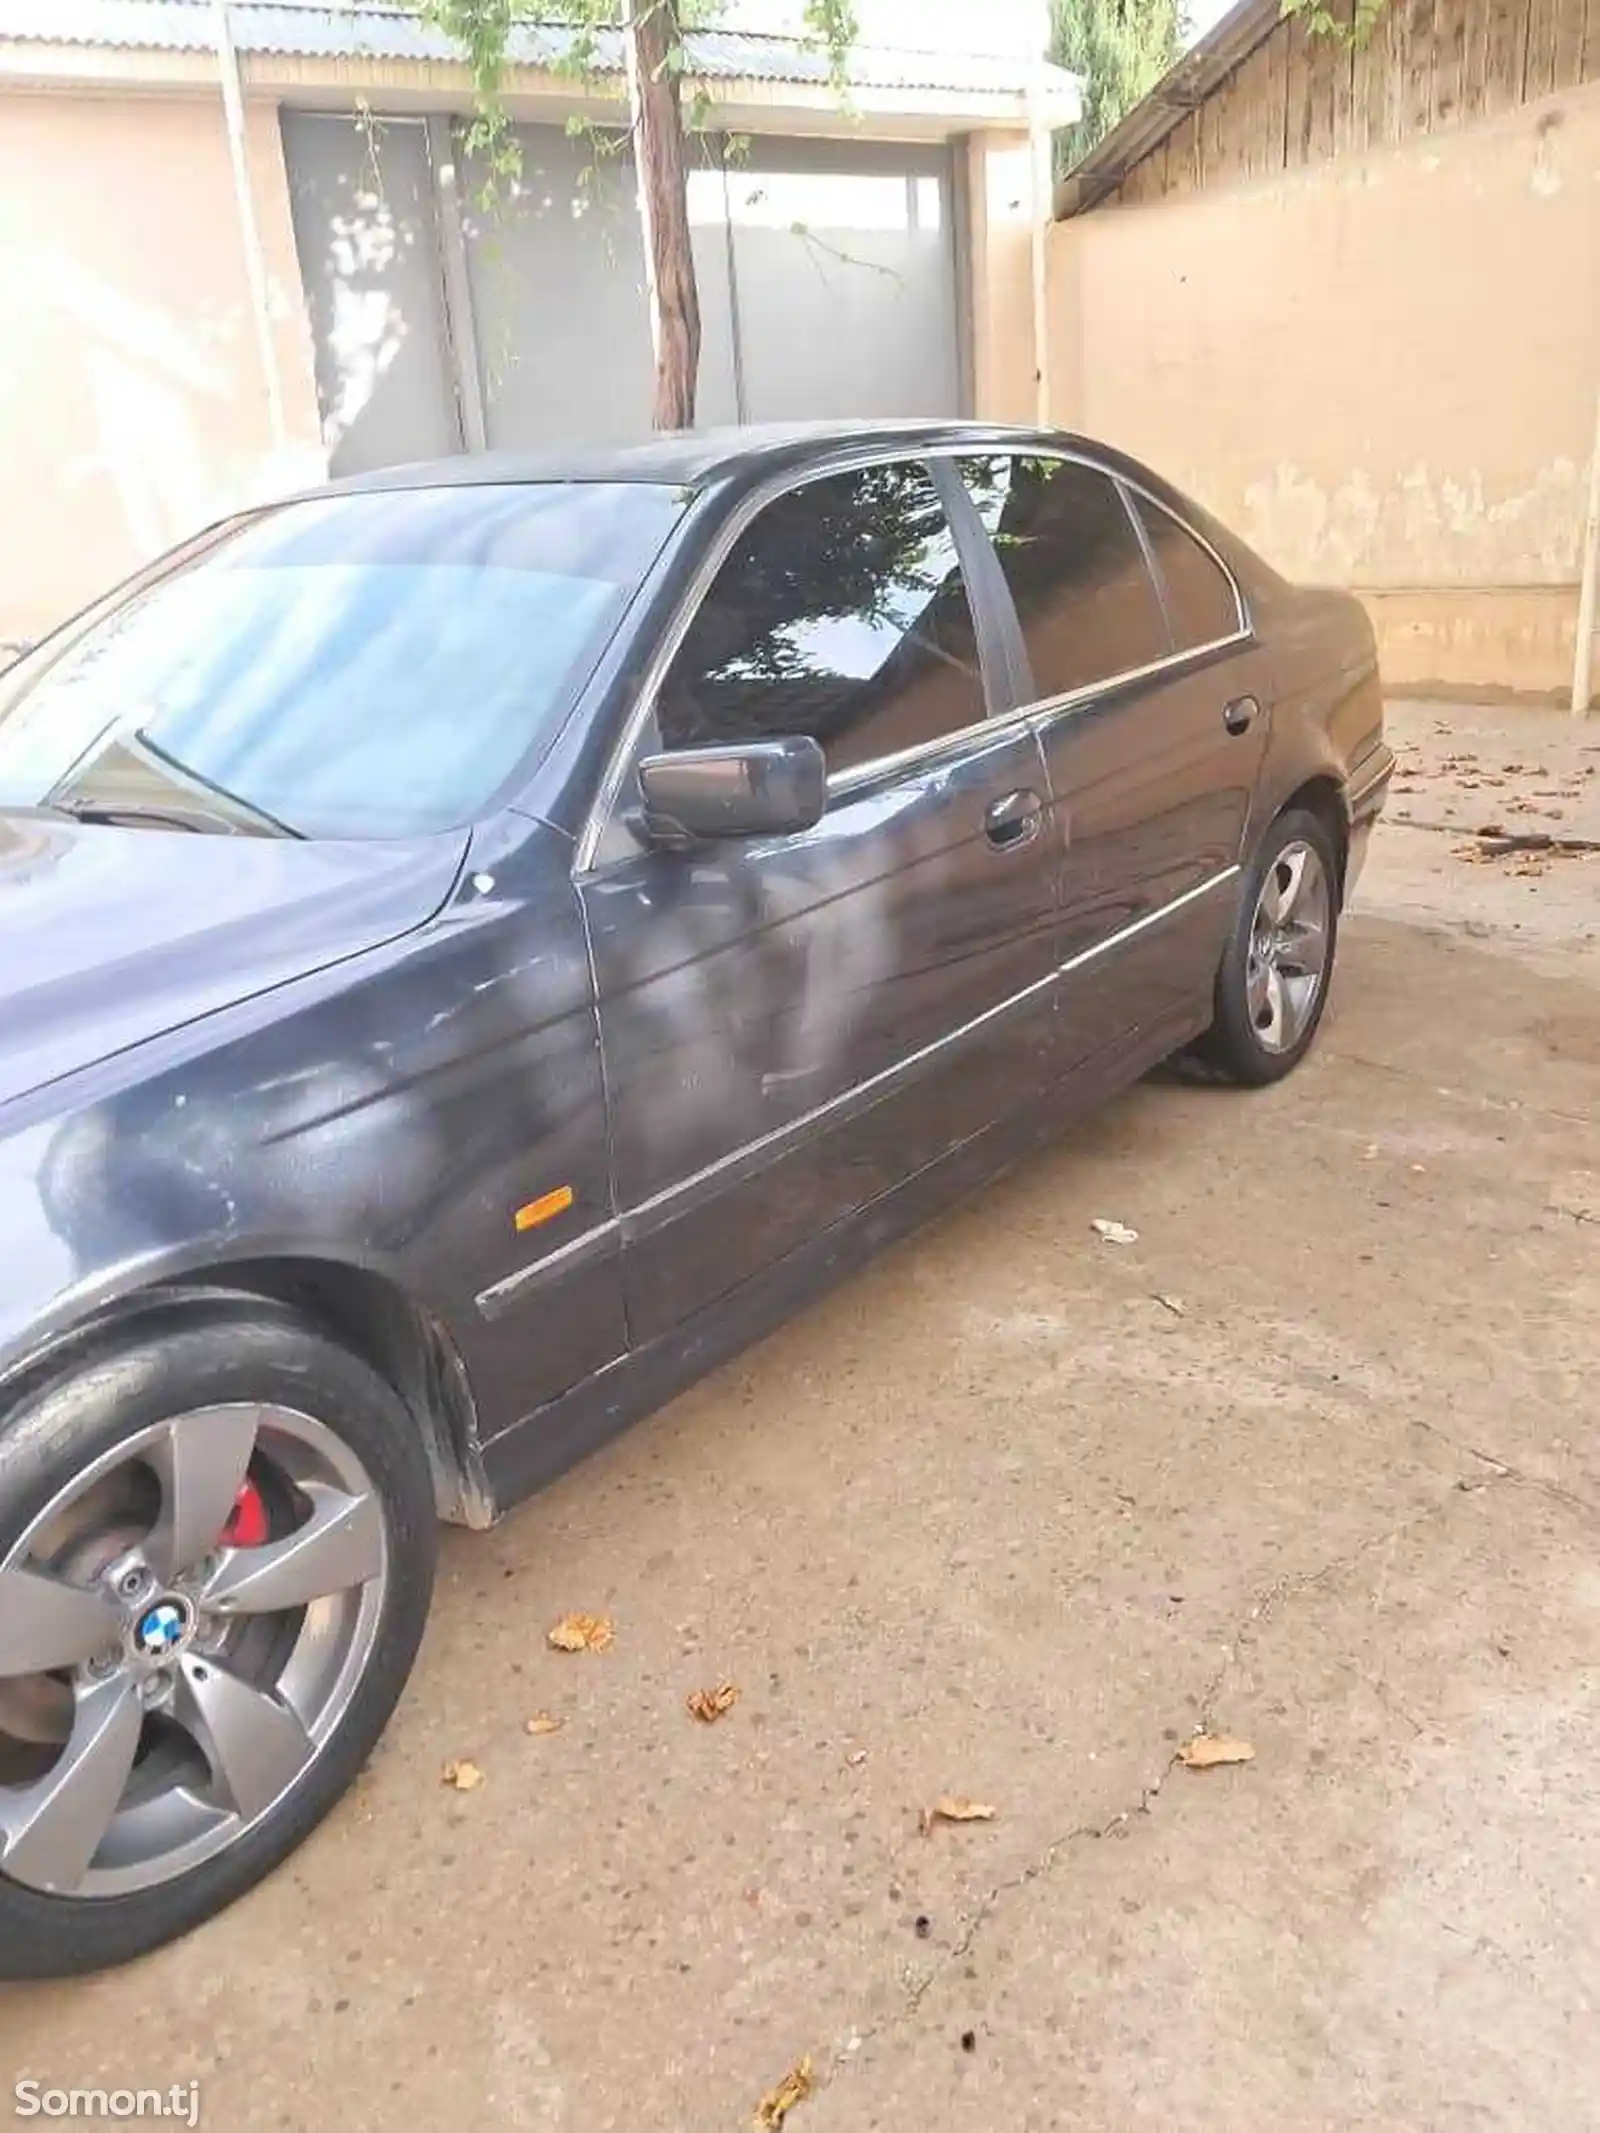 BMW M5, 1998-2